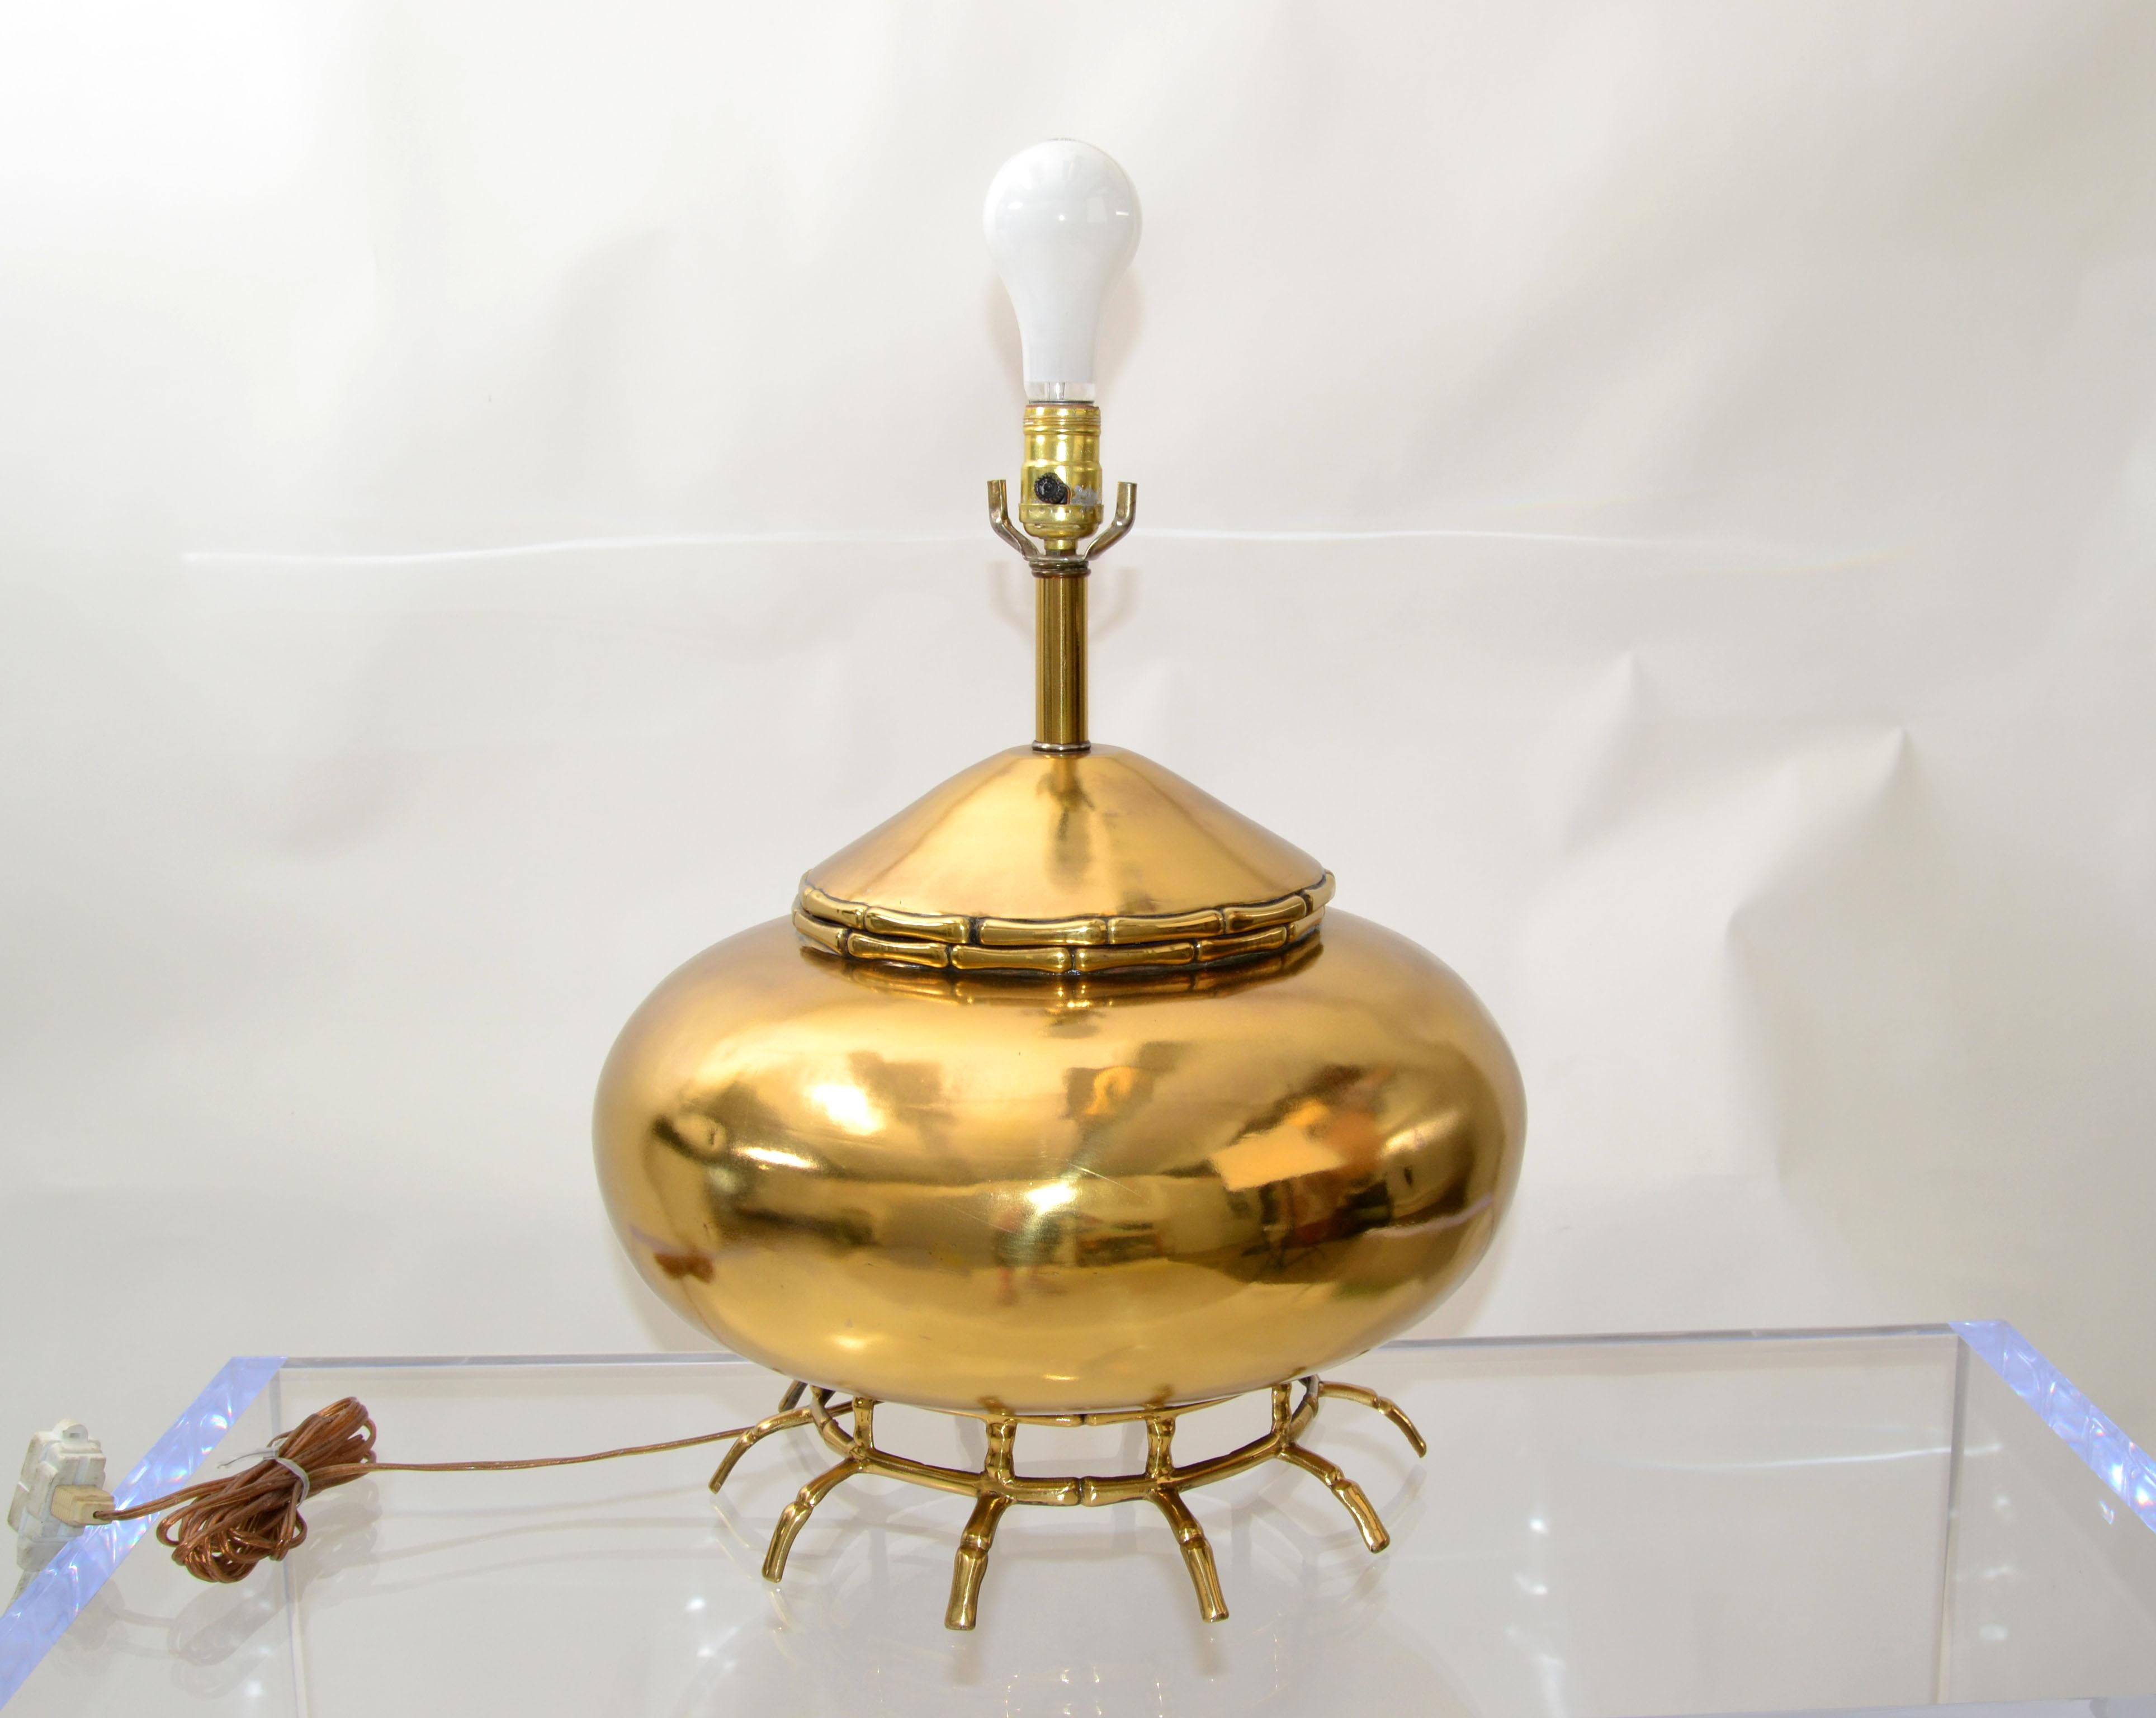 Lampe de table ronde en forme d'urne en laiton, moderne du milieu du siècle, avec des pieds en forme d'araignée.
En parfait état de fonctionnement et utilise une ampoule de 150 watts max. 150 watts.
Remarque : pas d'abat-jour, de harpe, de fleuron.